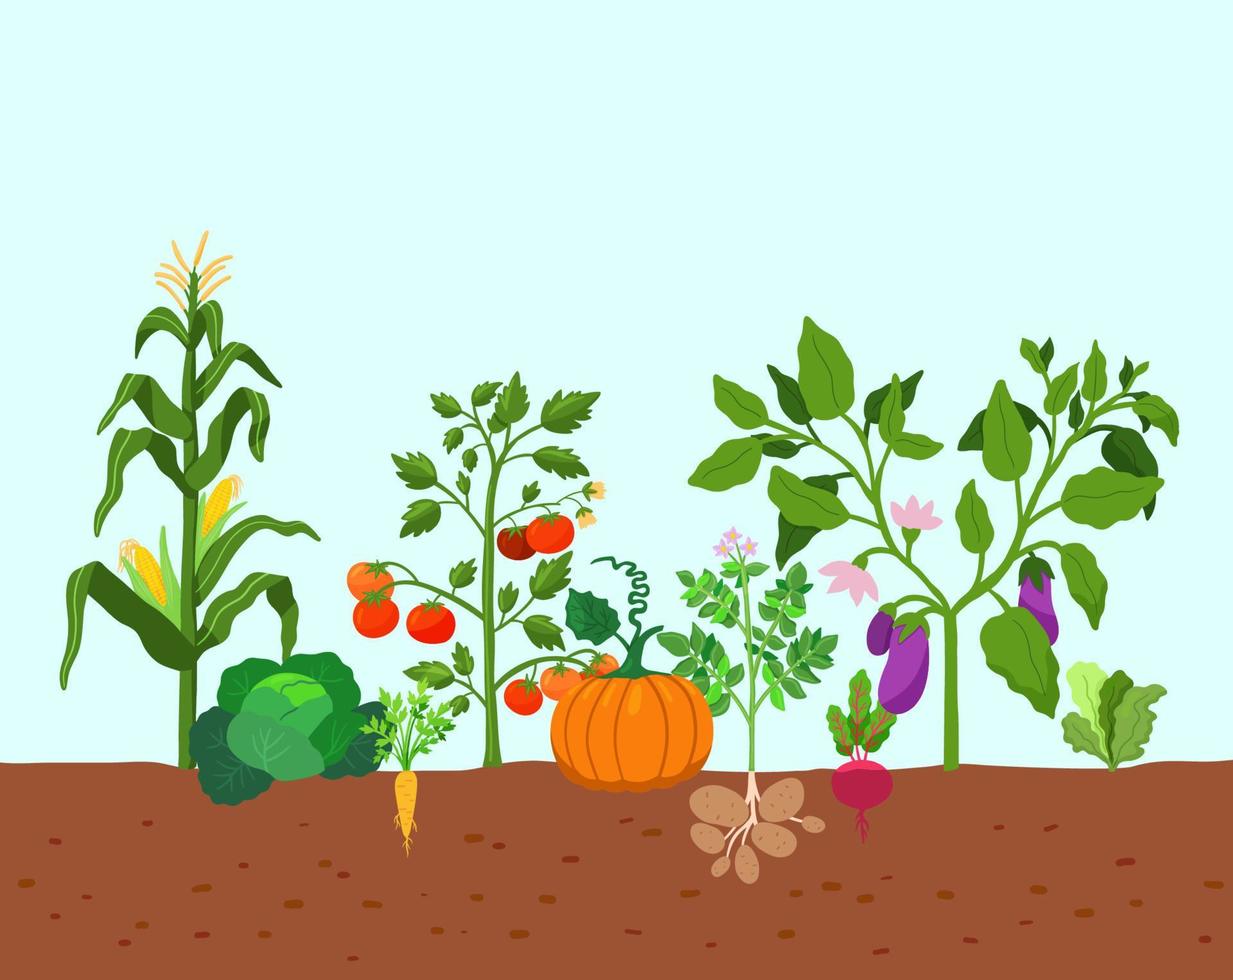 récolte de légumes pommes de terre, maïs, citrouilles, tomates et divers légumes en pleine terre. illustration vectorielle dans un style plat. culture fermière de légumes. vecteur